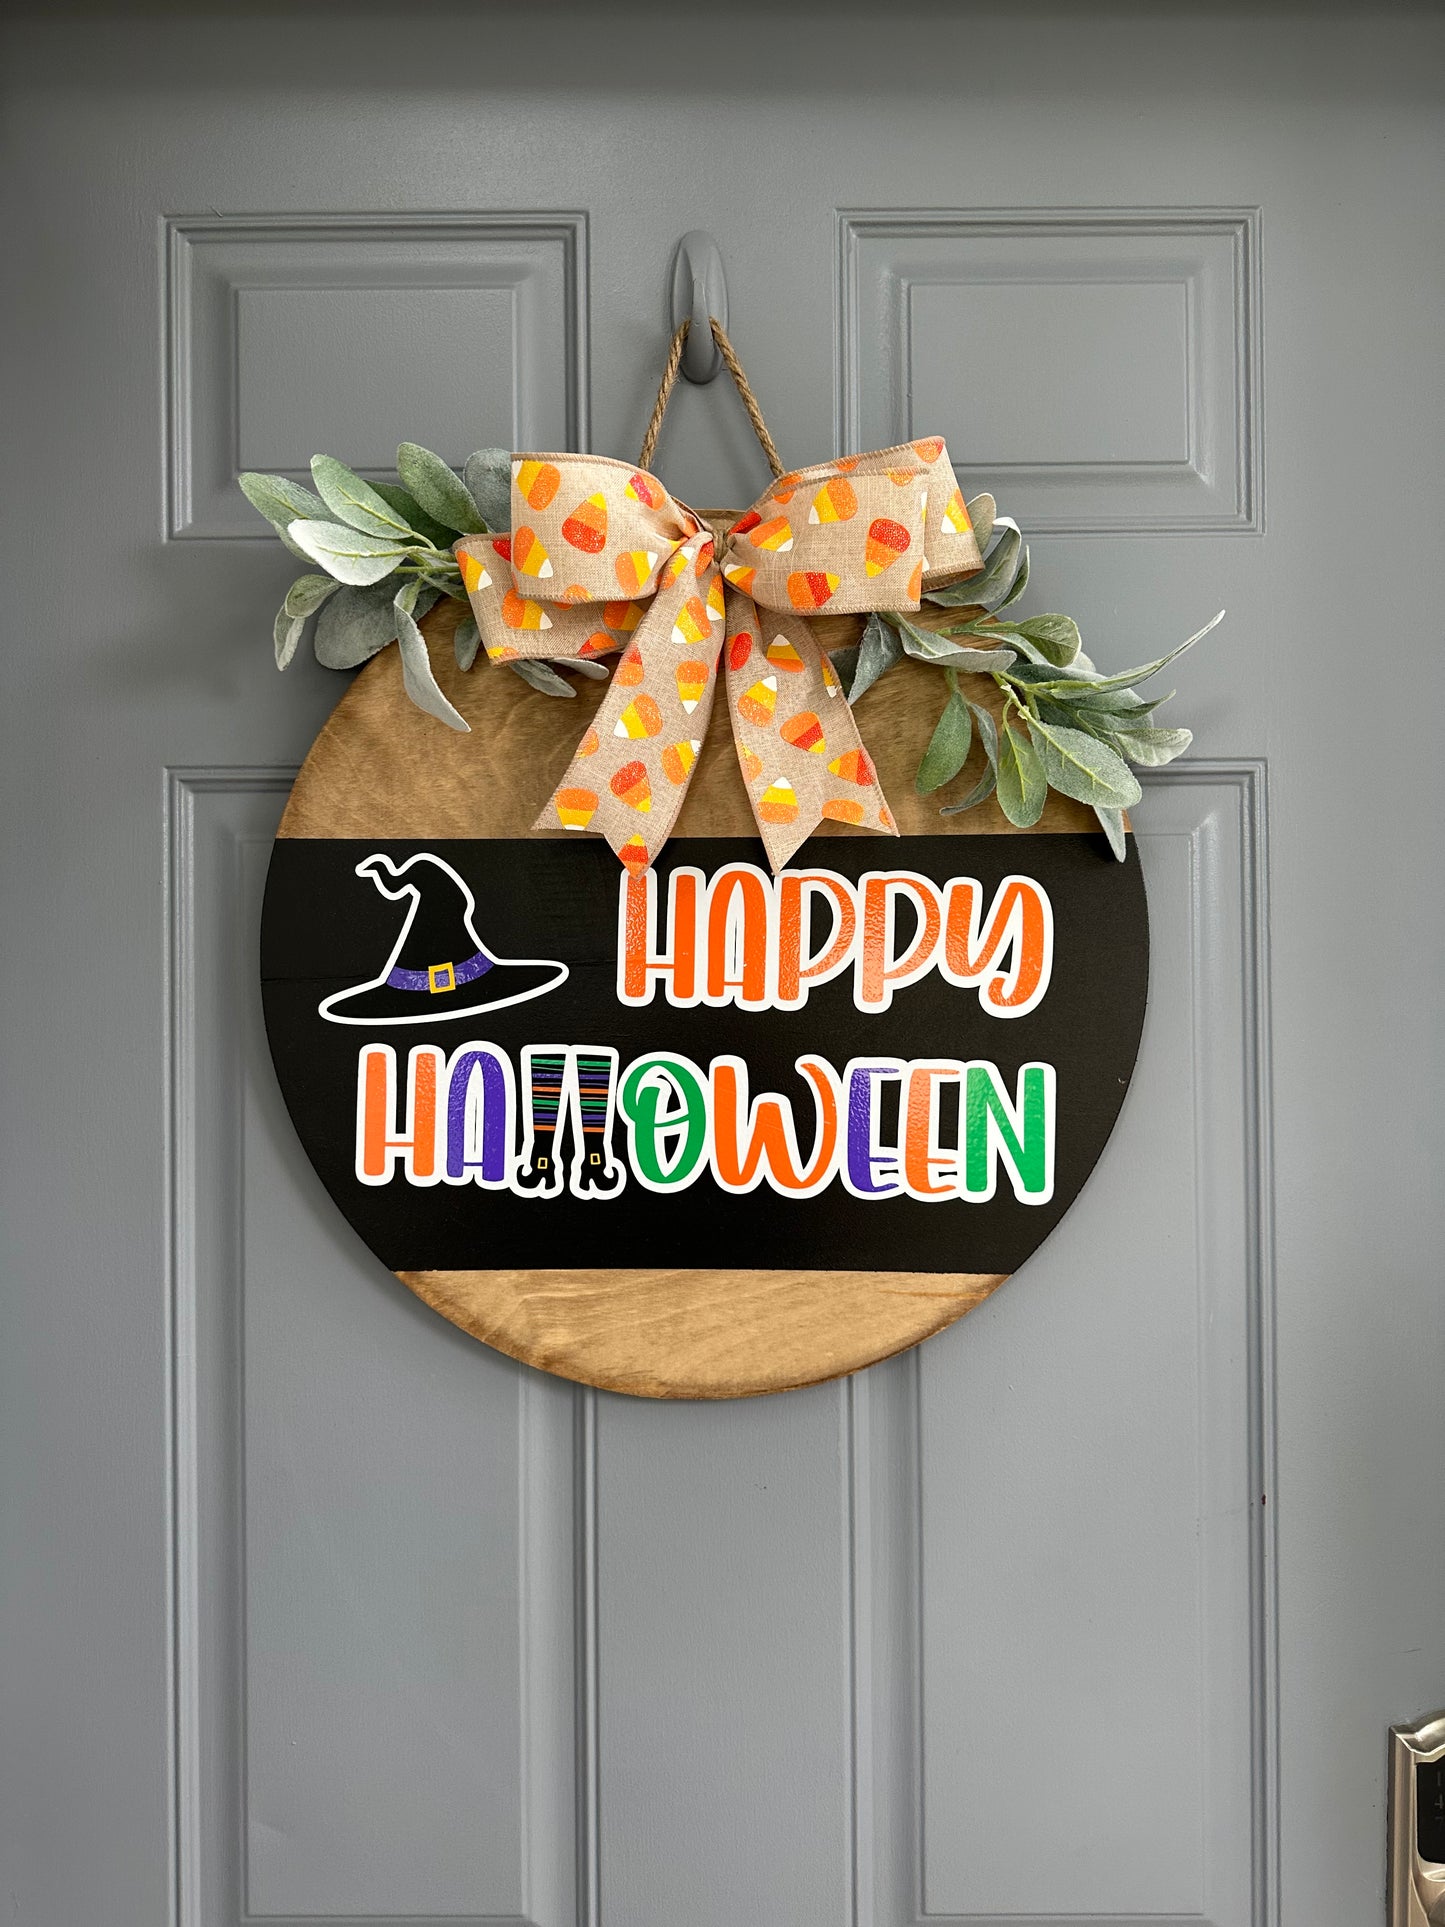 Happy Halloween Door Hanger - Willow Love Bug Designs 